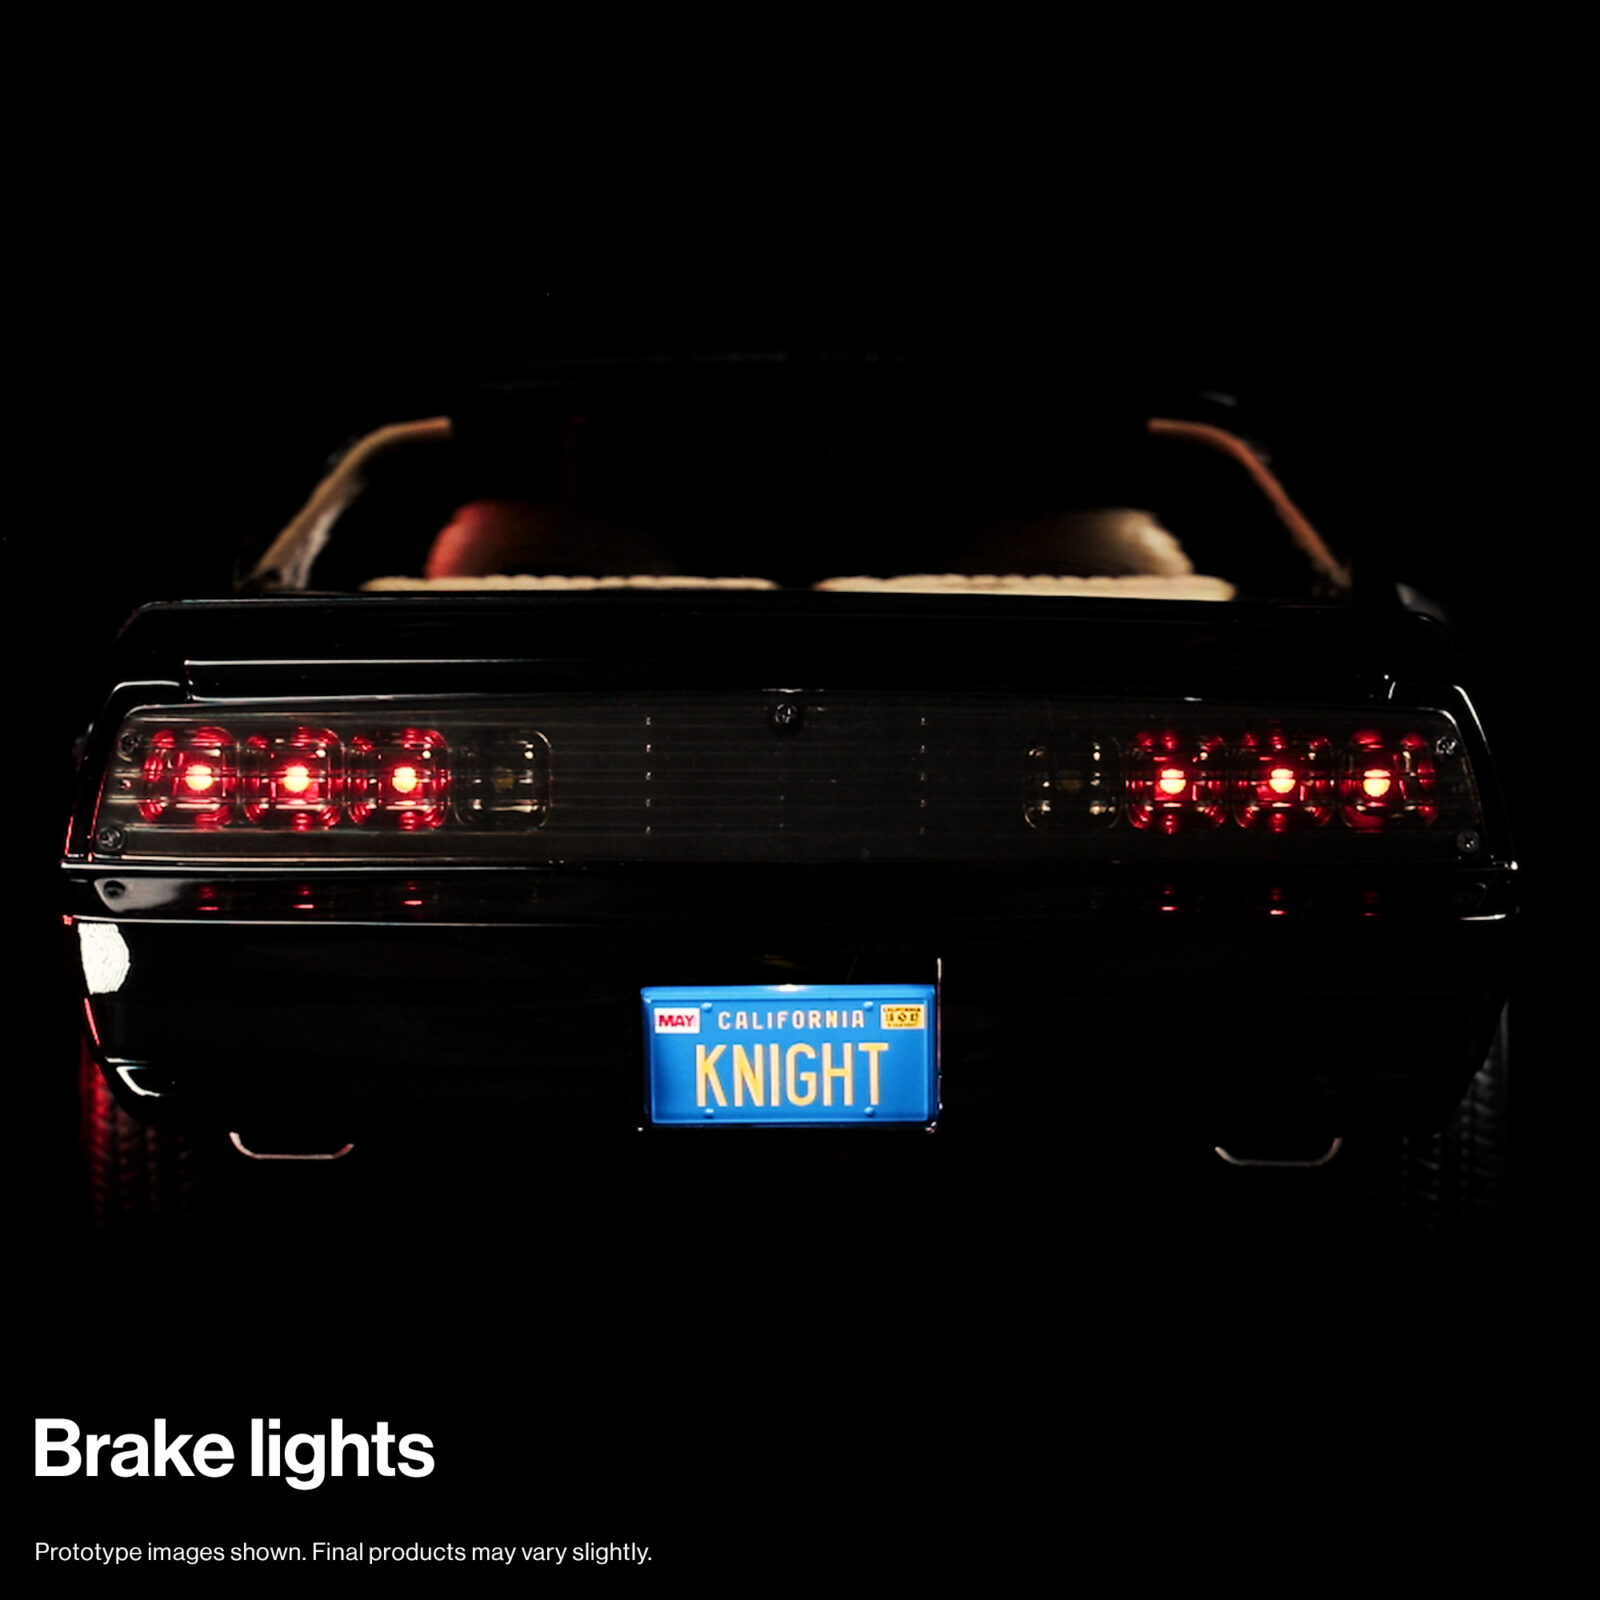 KITT brake lights